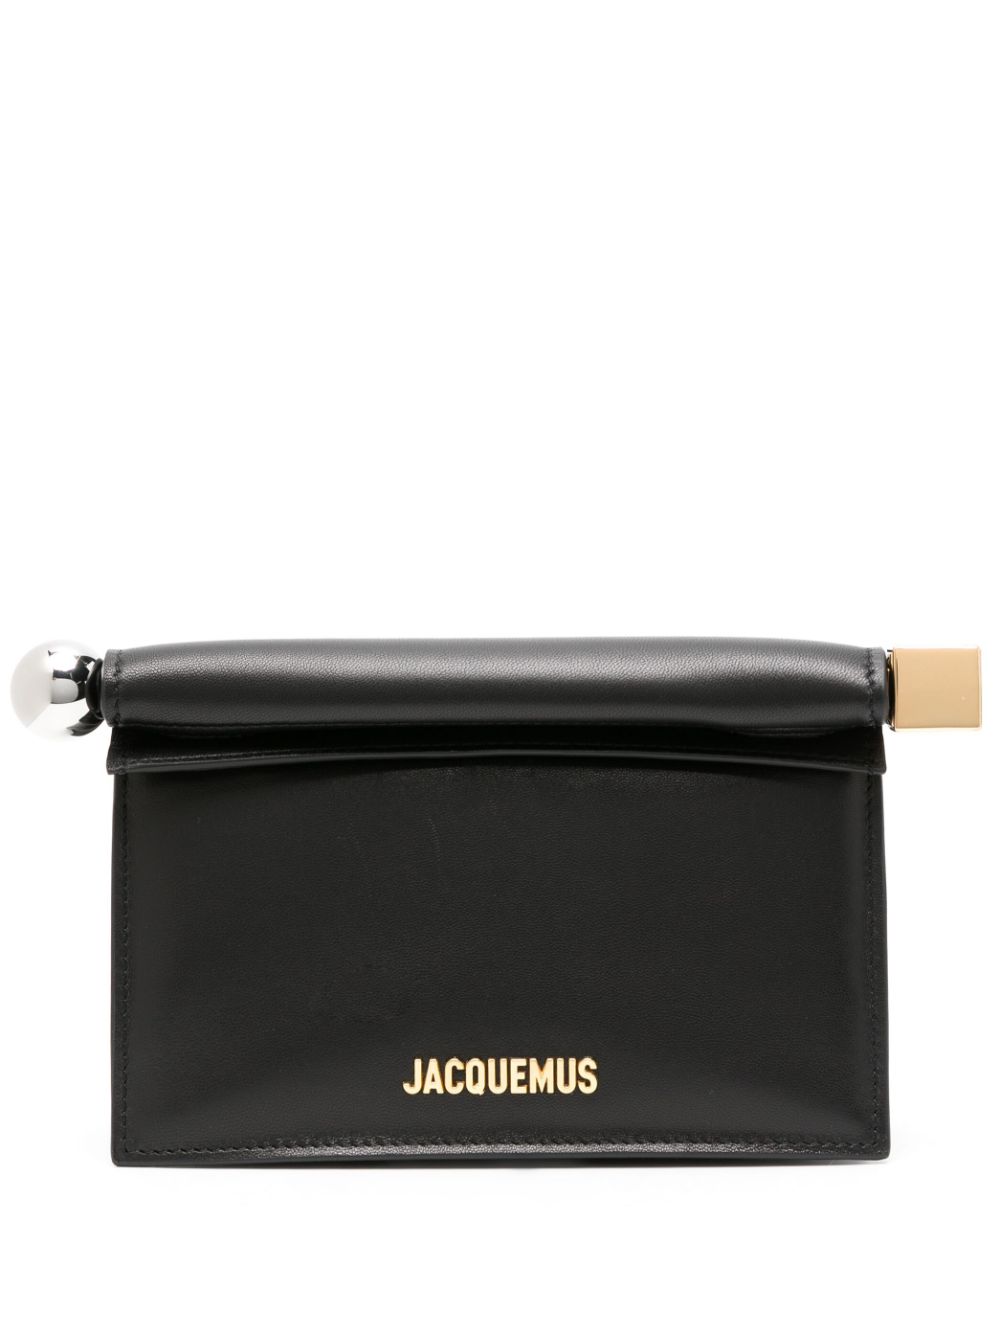 Jacquemus La Petite Pochette Rond Carré Clutch Bag In Black